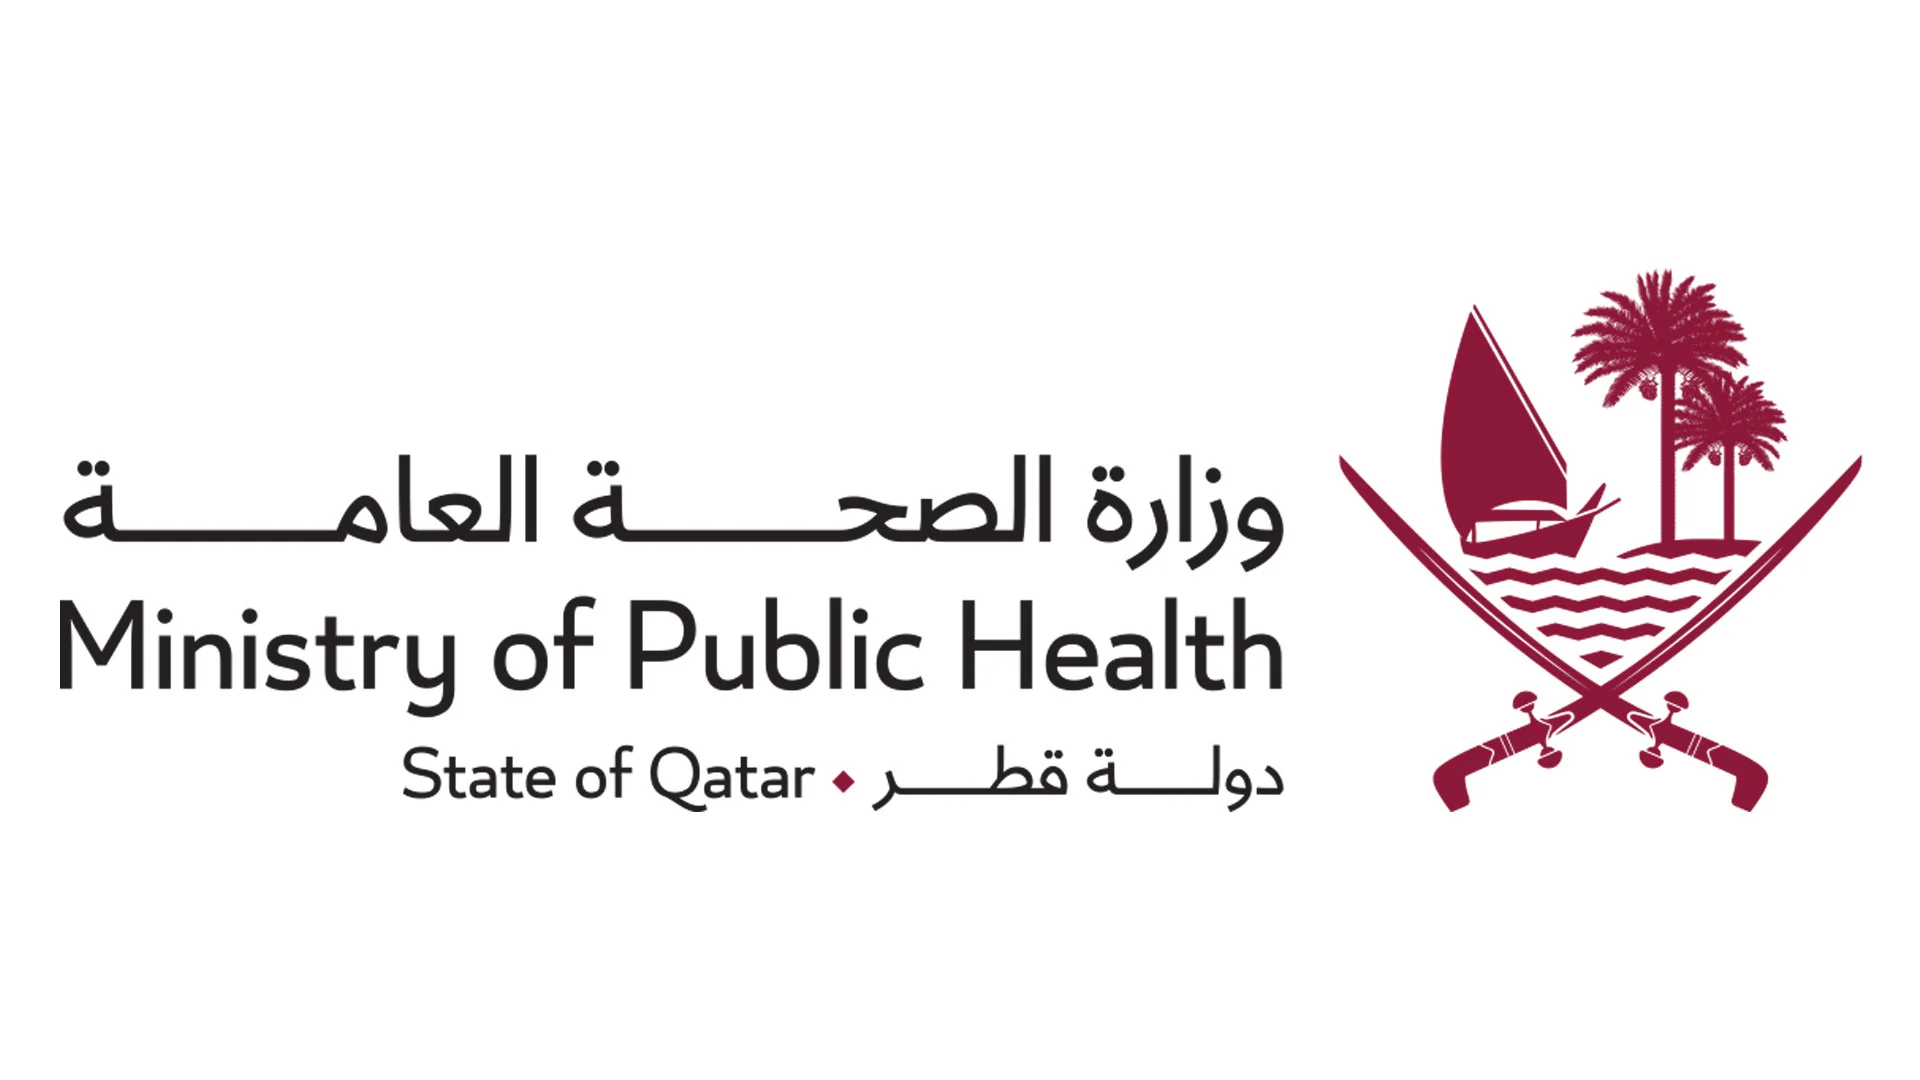 وزارة الصحة العامة تستعد لتنفيذ المرحلة الثانية للمسح الوطني لضعف الإبصار وأسباب العمى